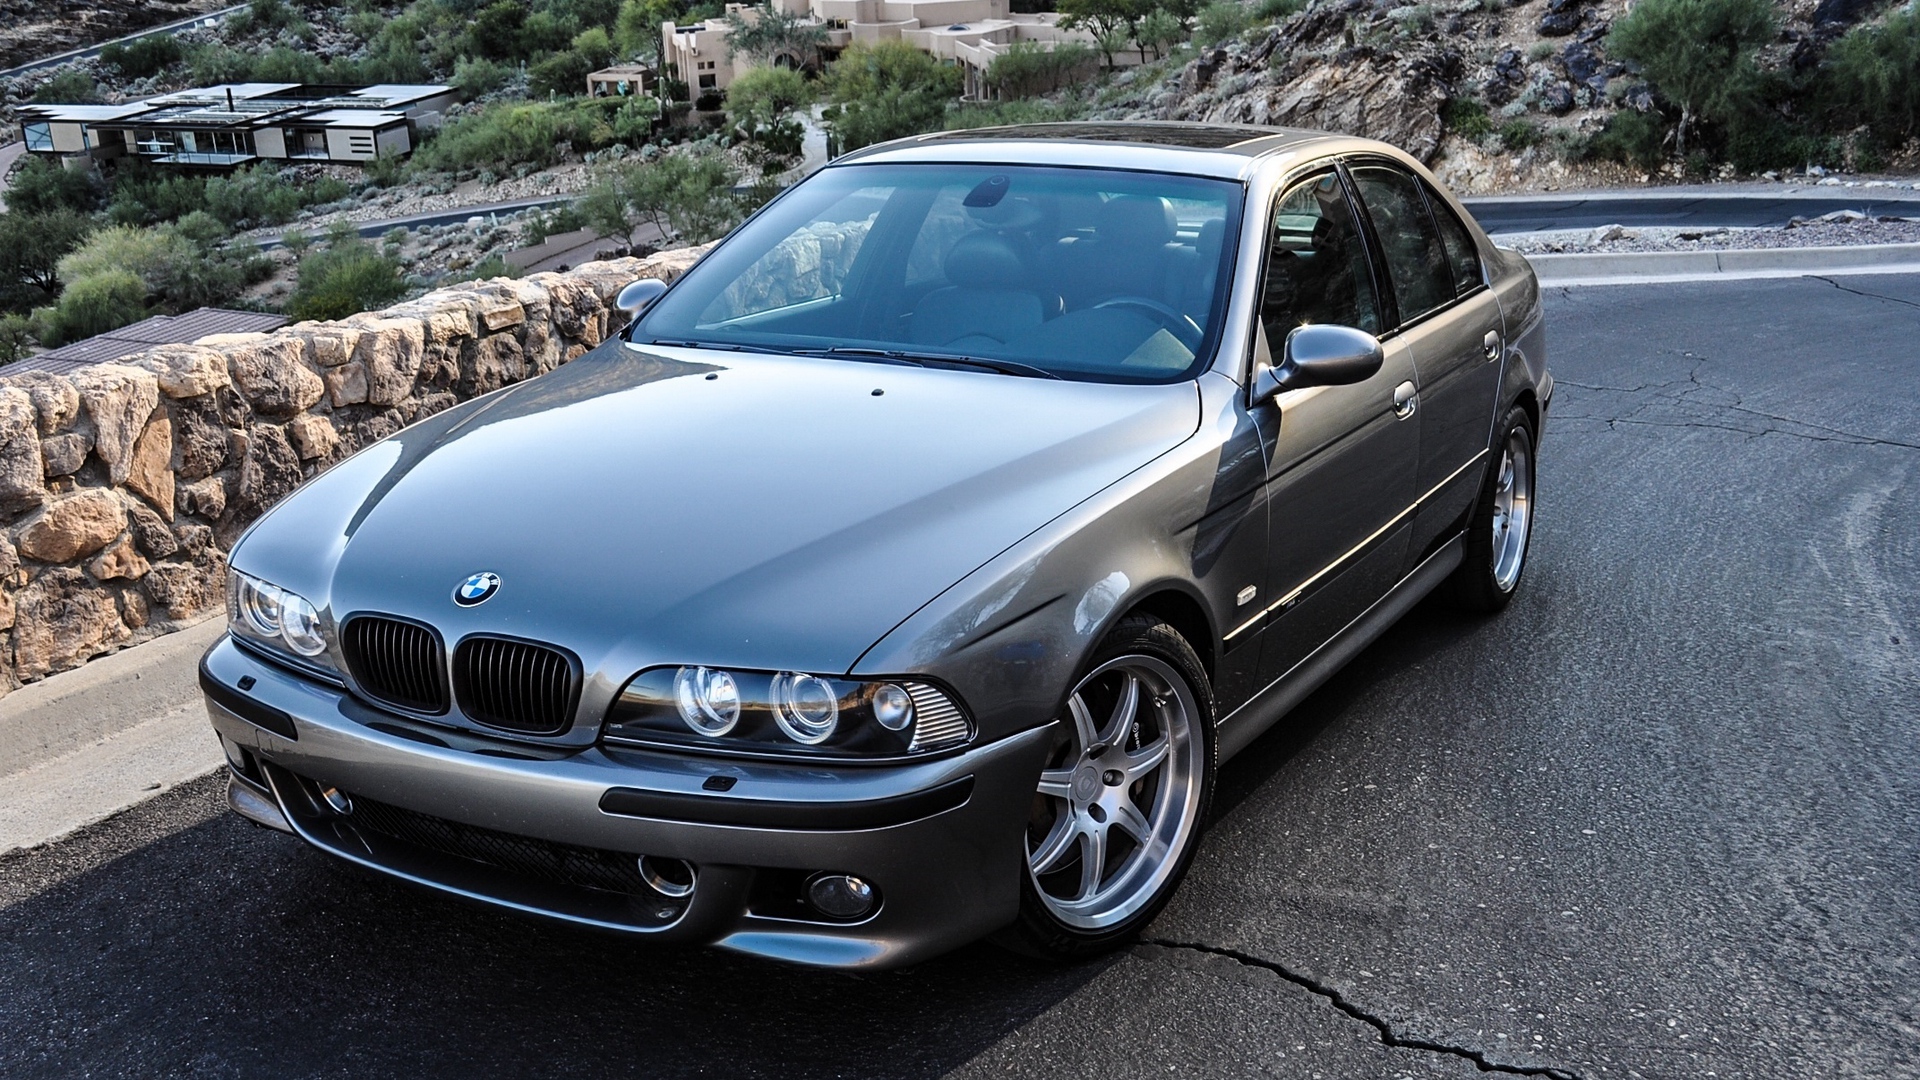 BMW E39 M5 Silver HD Wallpaper